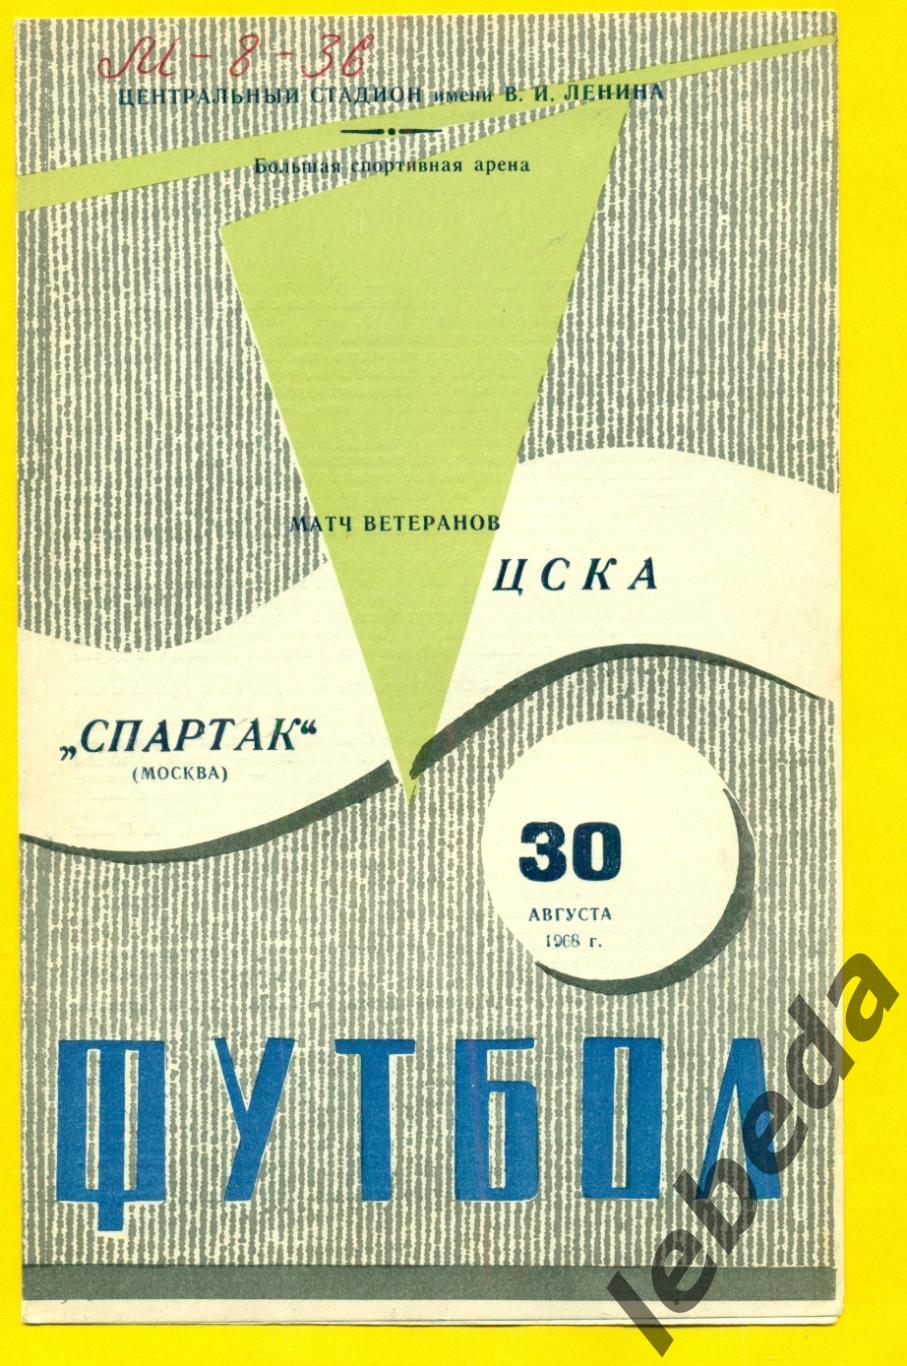 ЦСКА - Спартак Москва - 1968 г. (30.08.68.)